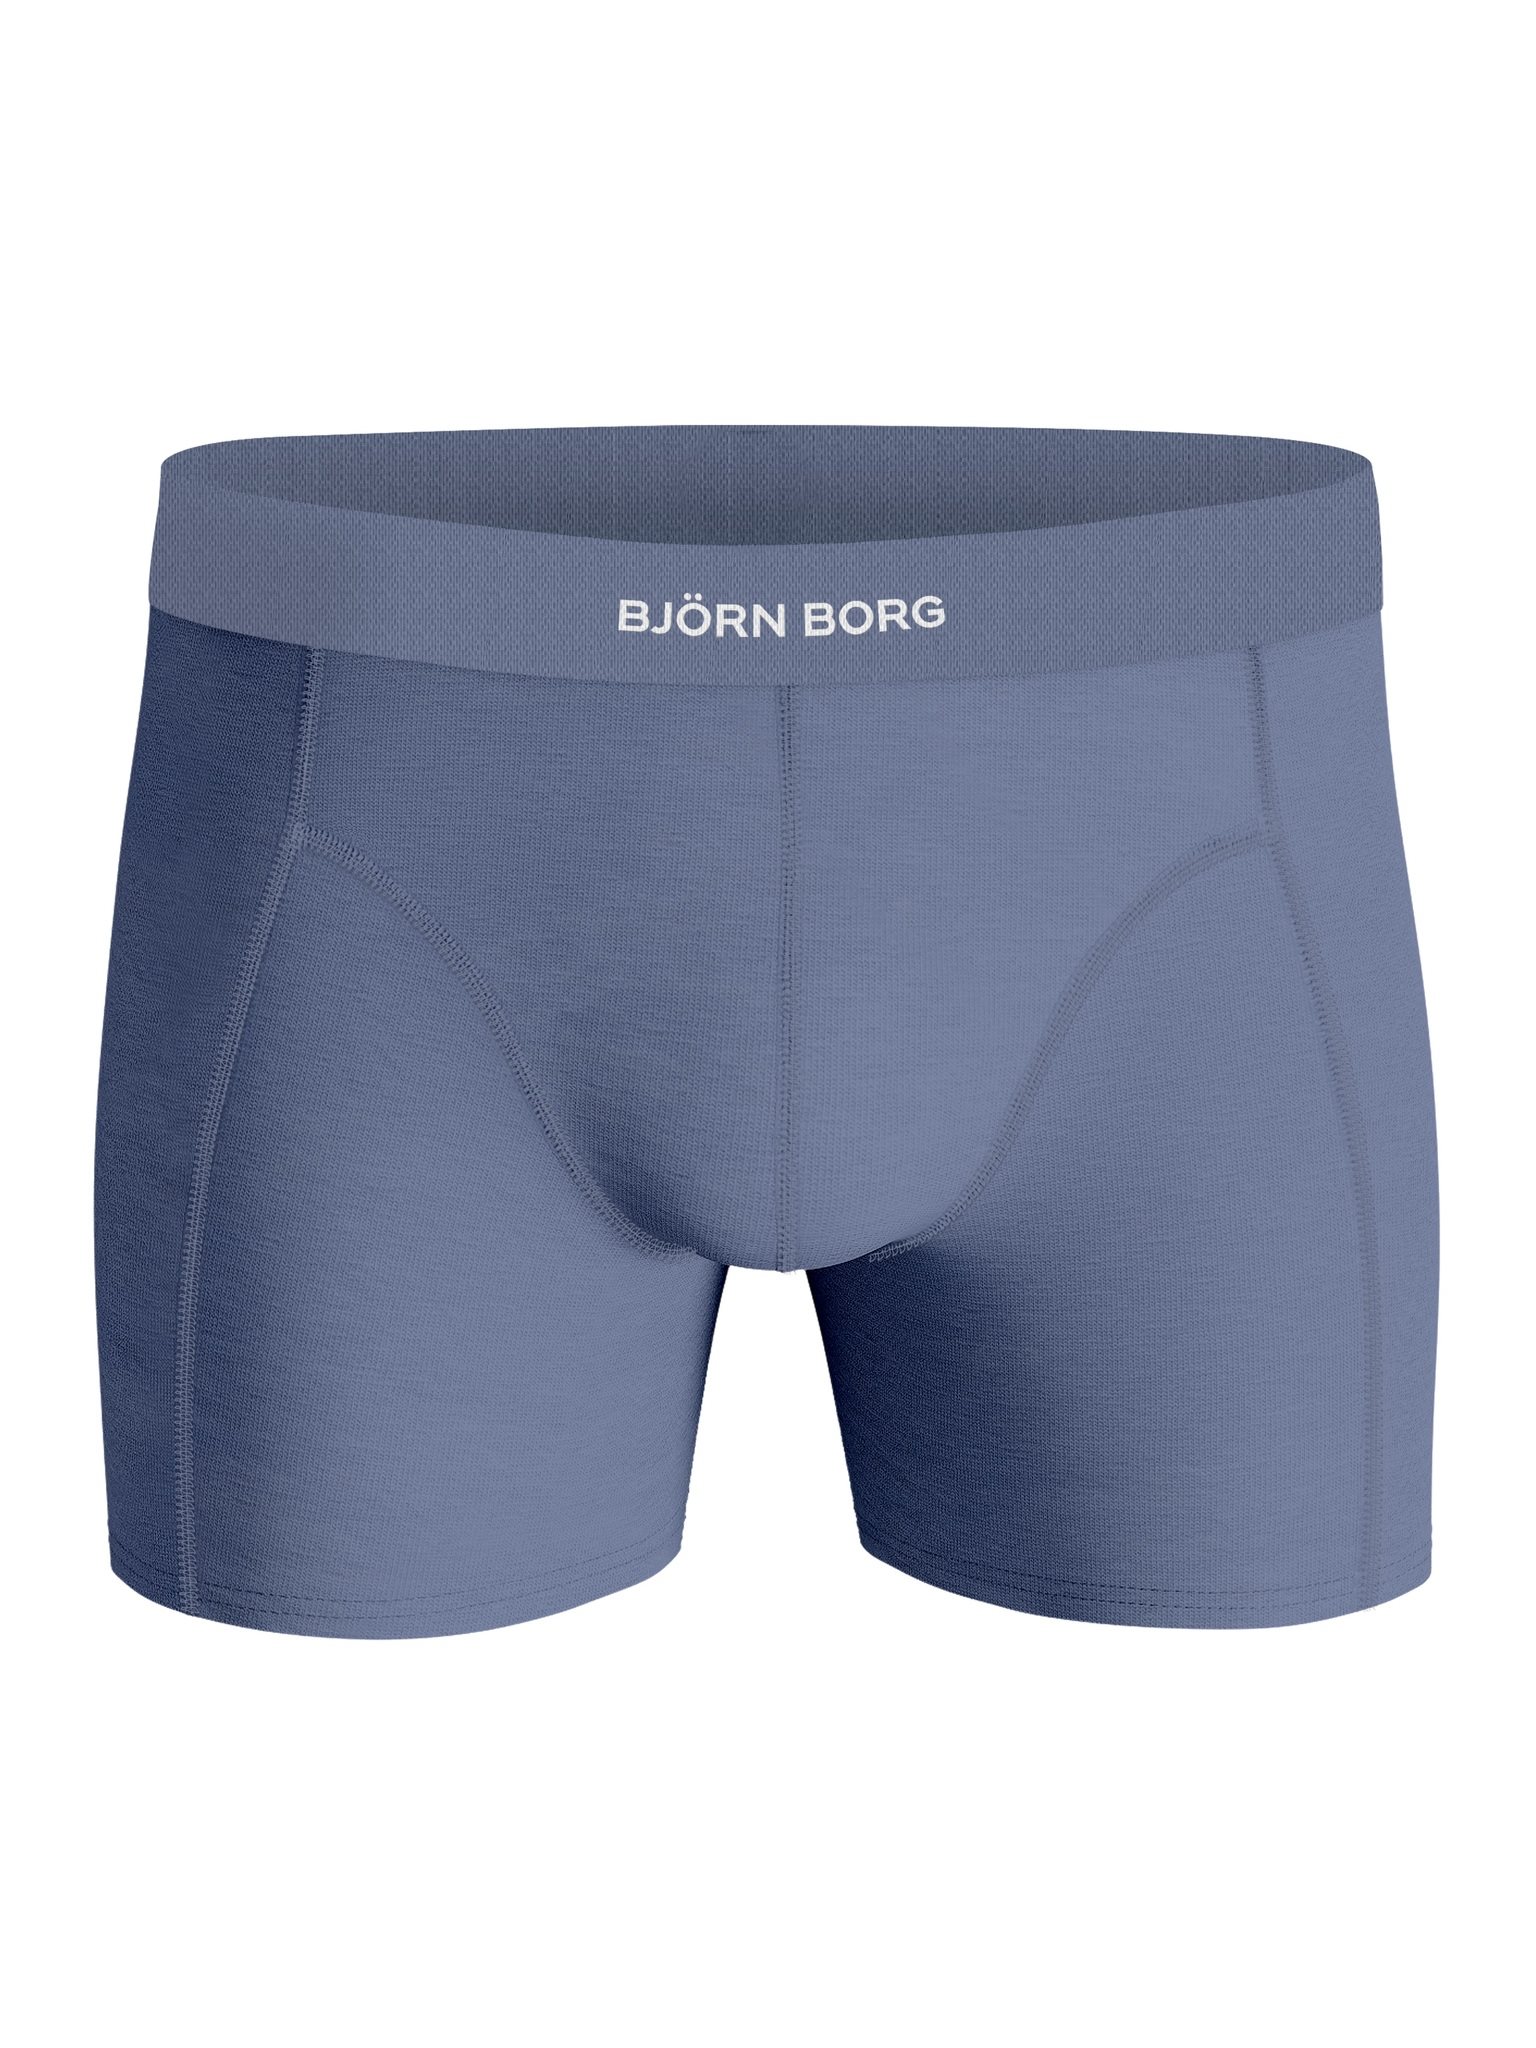 Bjorn Borg Premium Cotton Stretch 2-PACK Short 